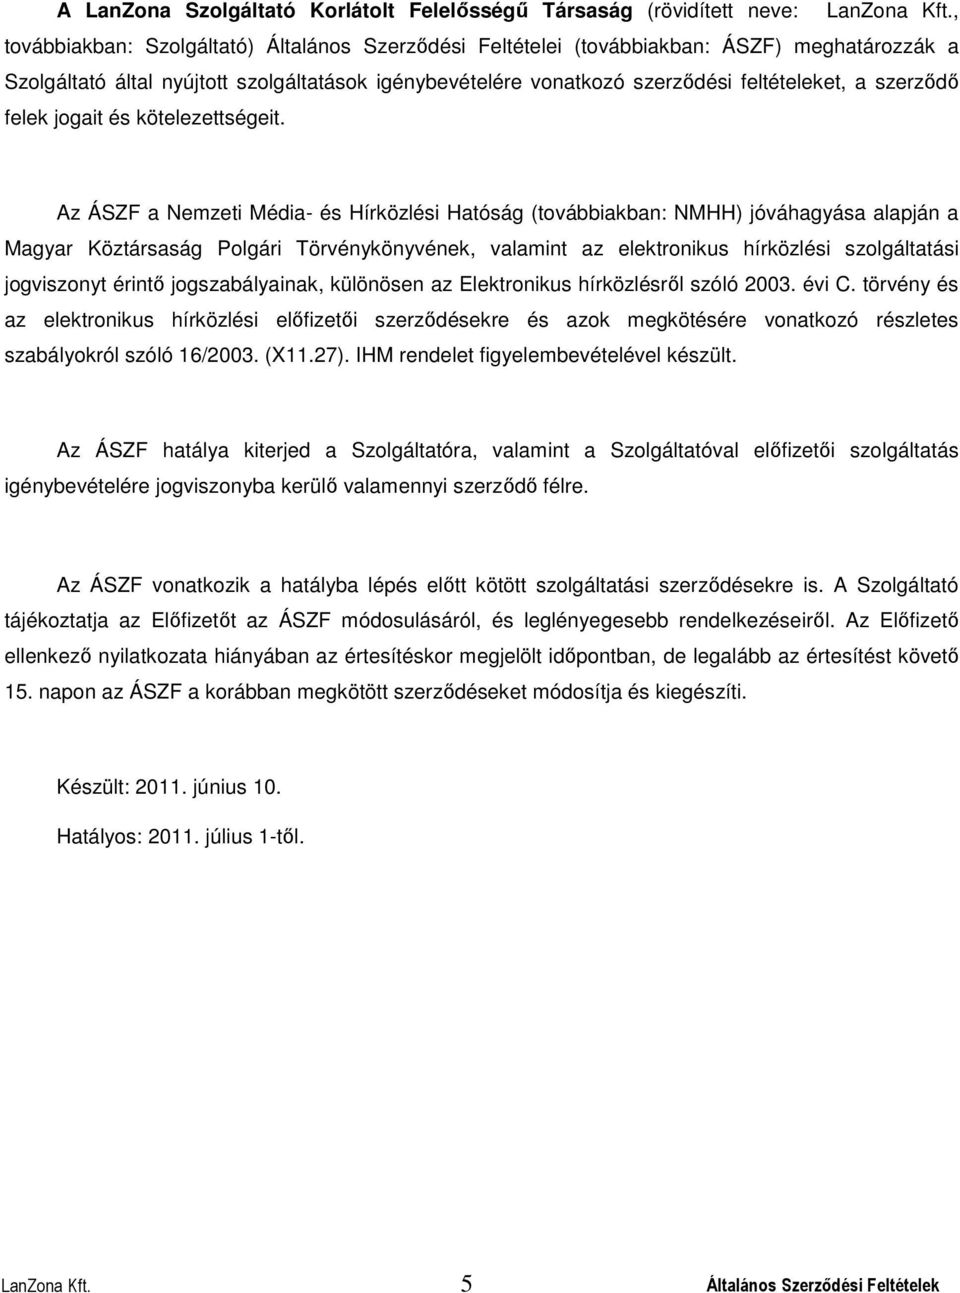 Az ÁSZF a Nemzeti Média- és Hírközlési Hatóság (továbbiakban: NMHH) jóváhagyása alapján a Magyar Köztársaság Polgári Törvénykönyvének, valamint az elektronikus hírközlési szolgáltatási jogviszonyt